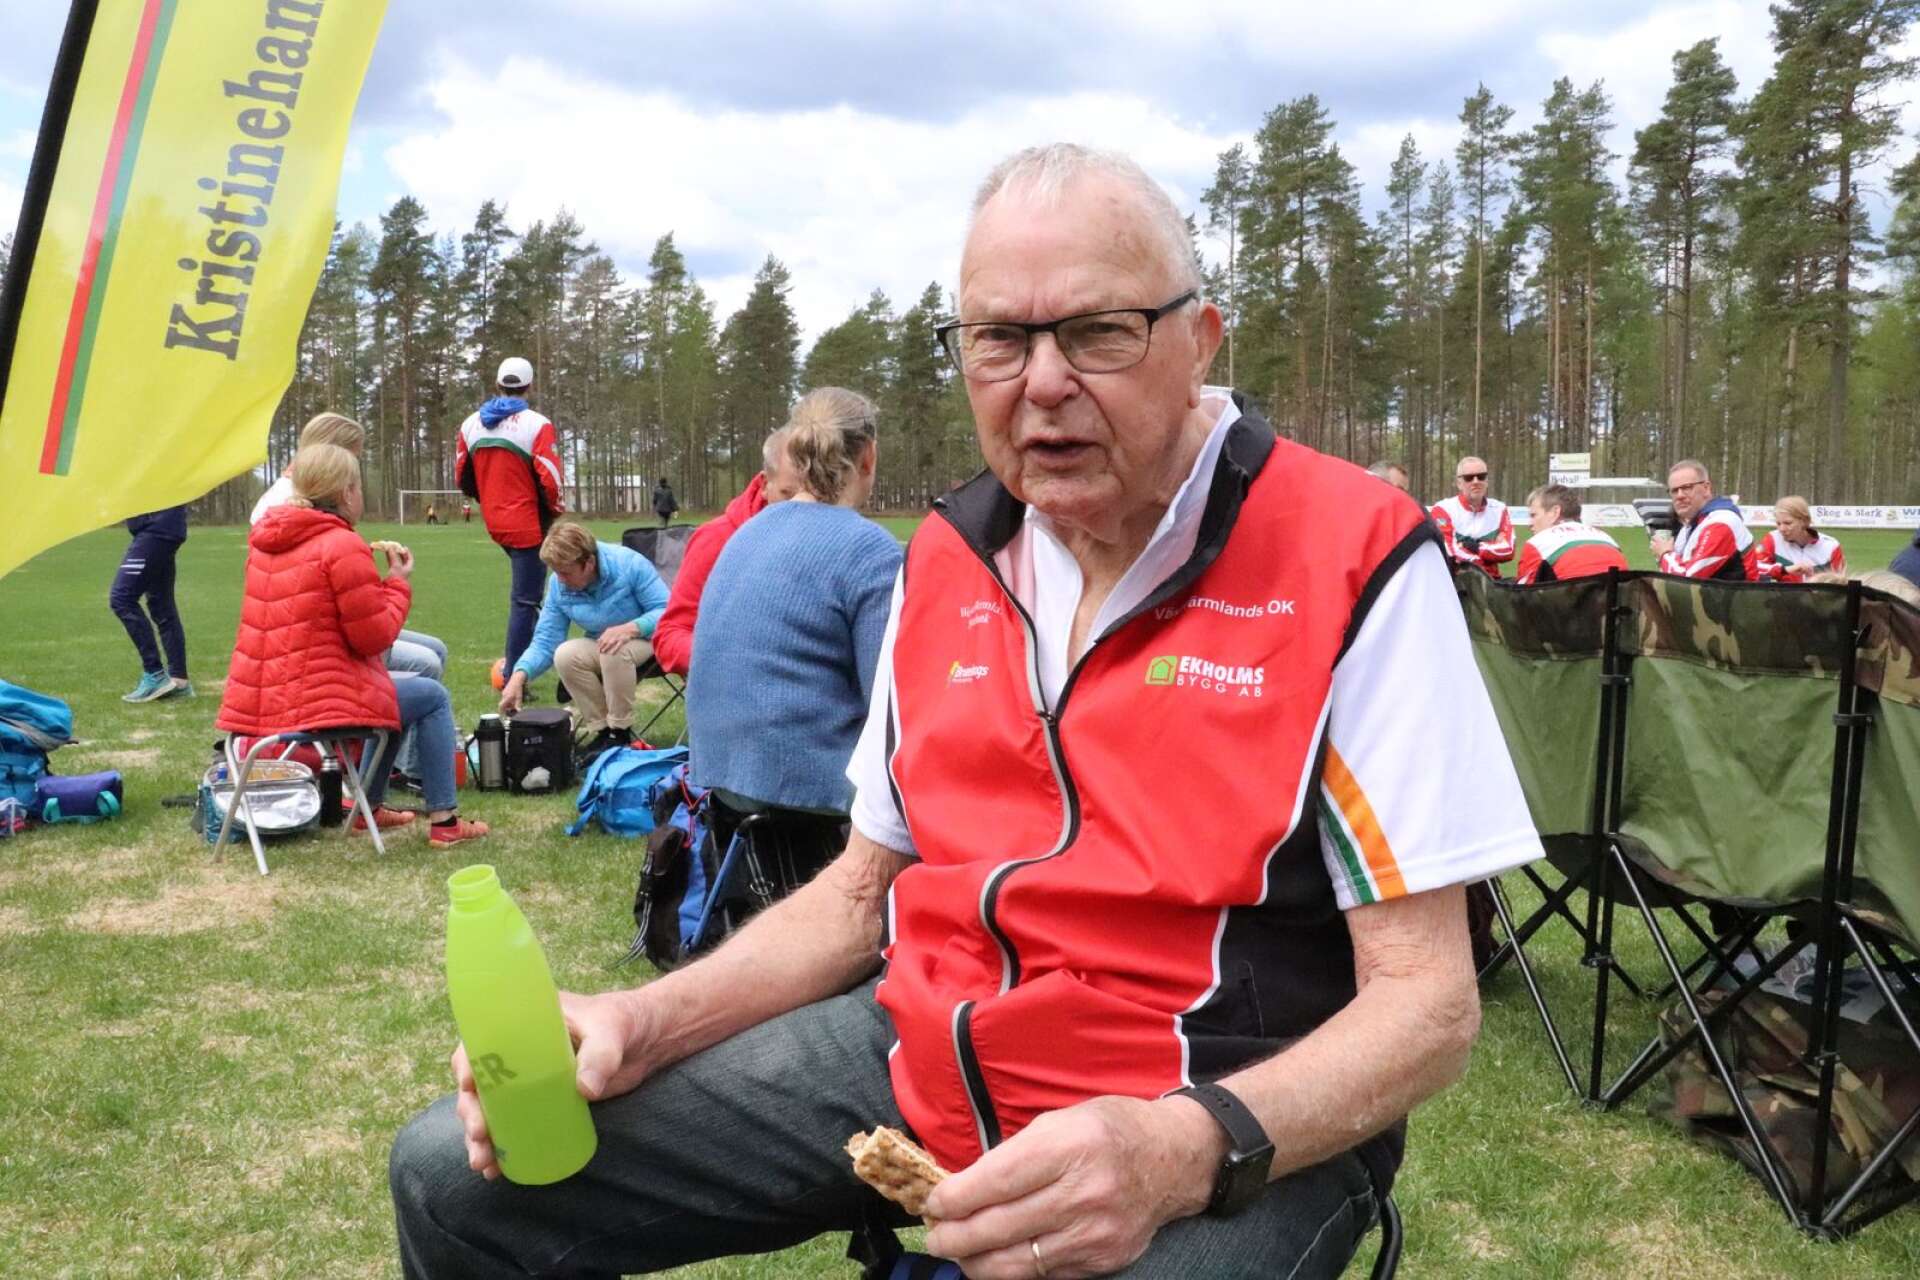 John Larsson från Årjäng var med sina 91 år Filipstadsträffens nestor.